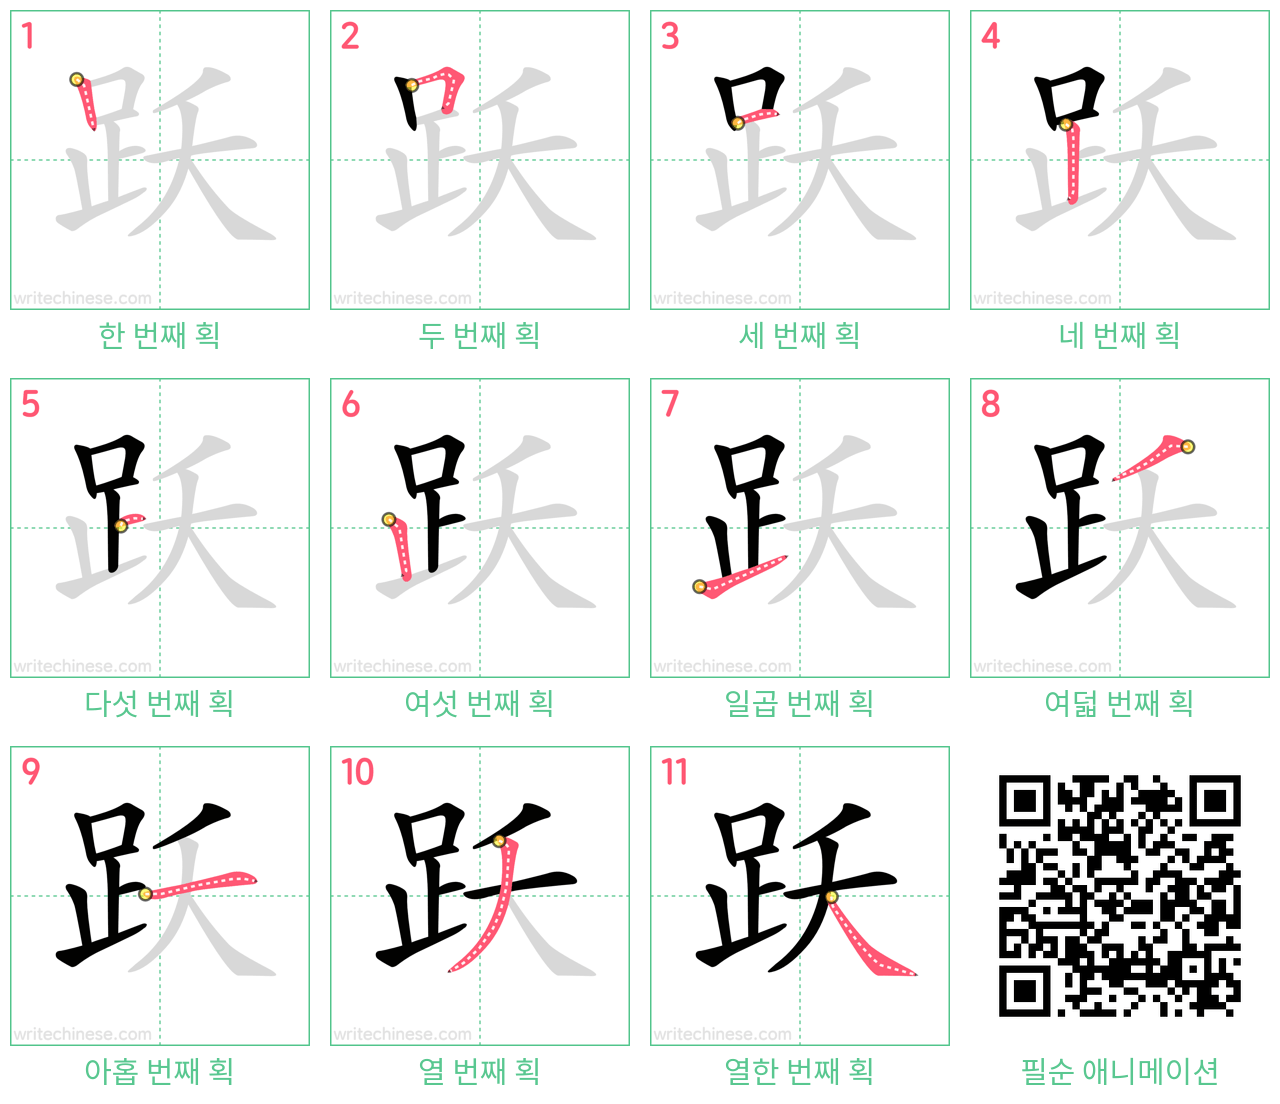 跃 step-by-step stroke order diagrams